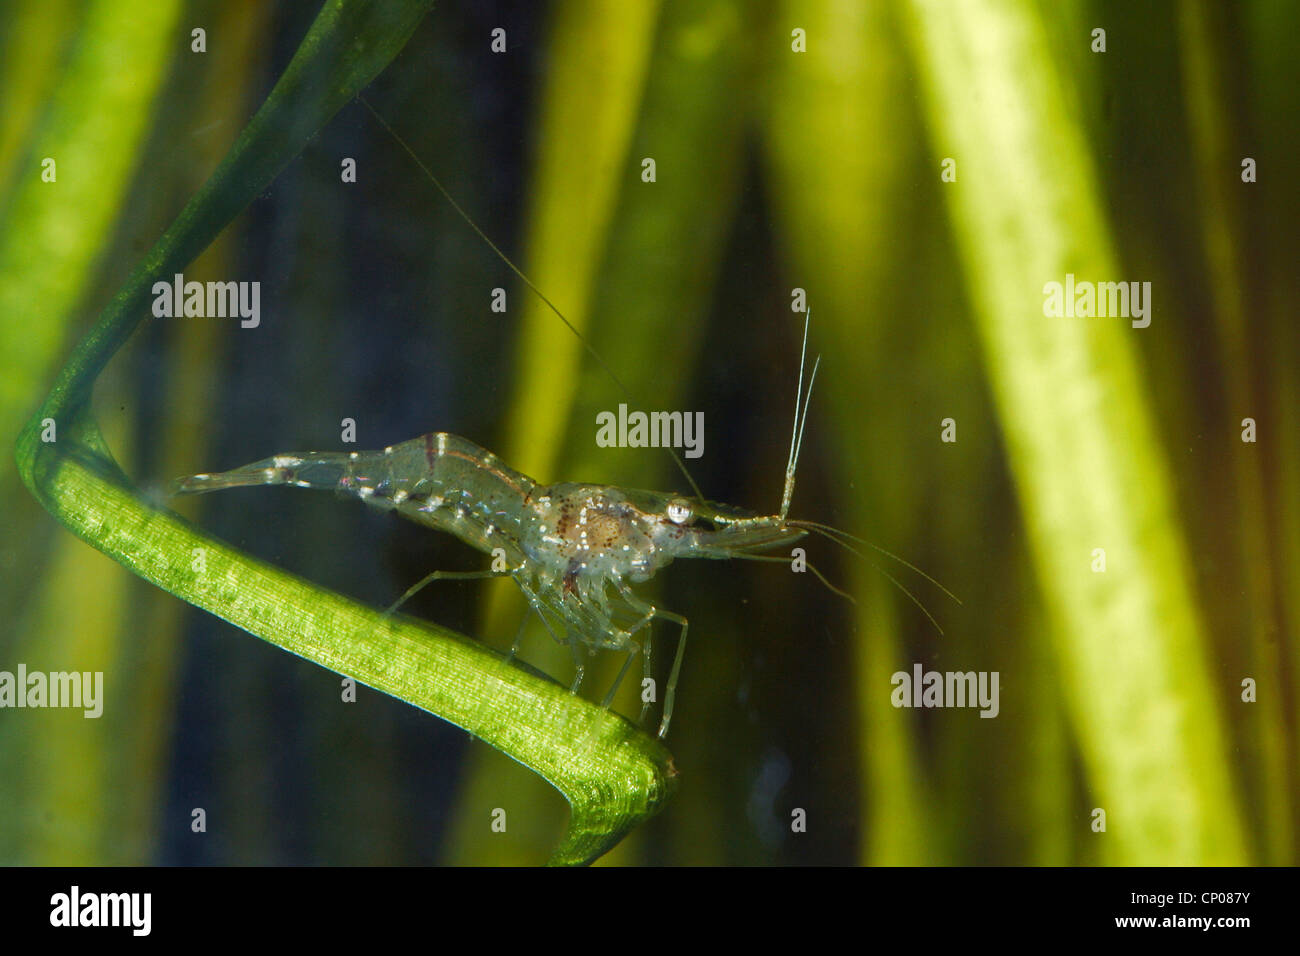 Freshwater shrimp, Grass shrimp (Palaemonetes antennarius), Germany Stock Photo